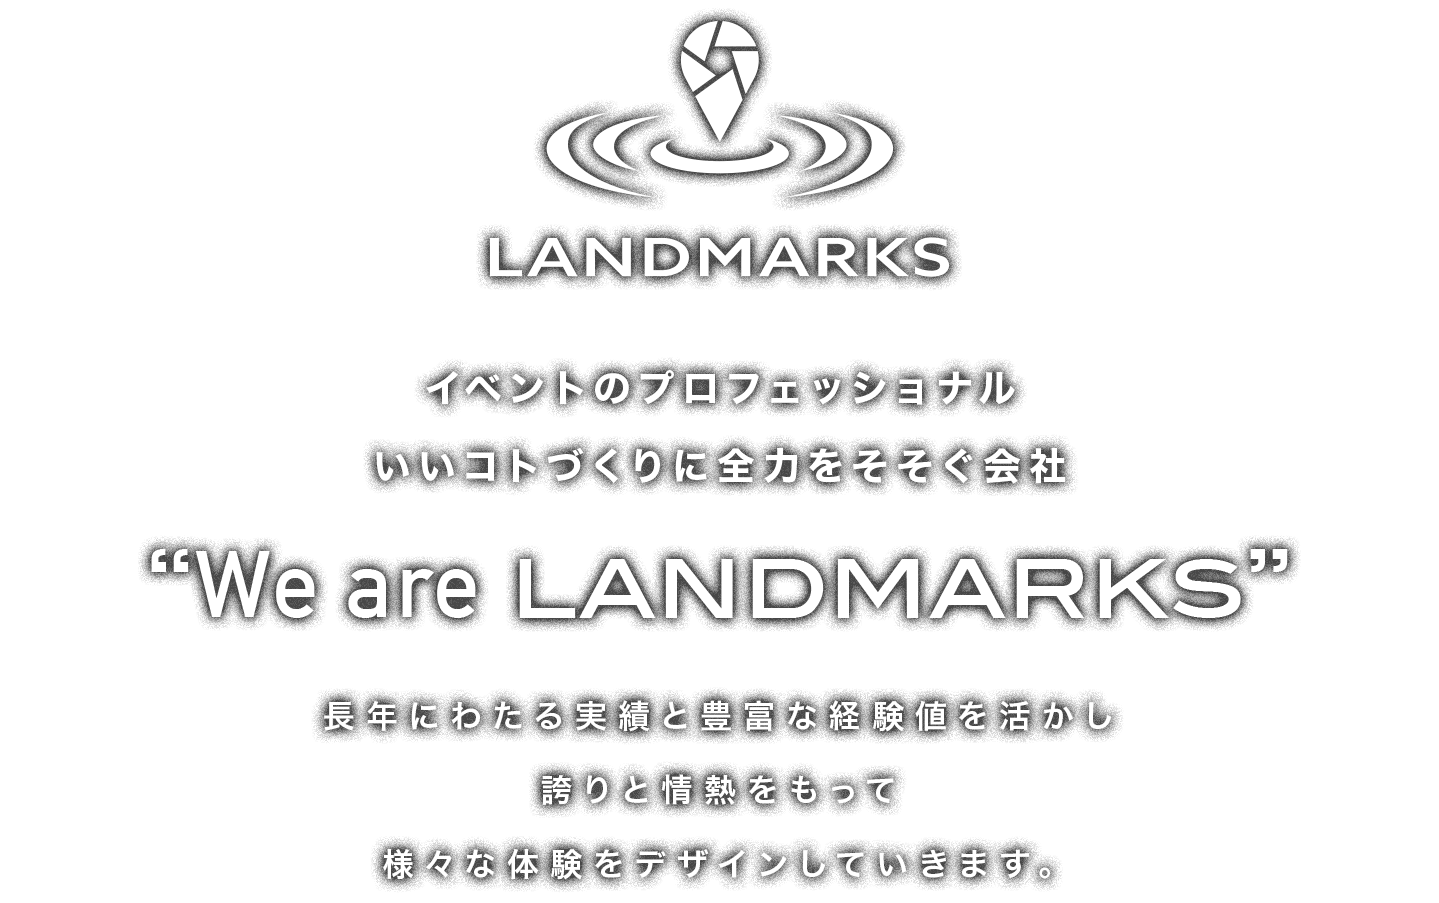 イベントのプロフェッショナル いいコトづくりに全力をそそぐ会社「We are LANDMARKS」